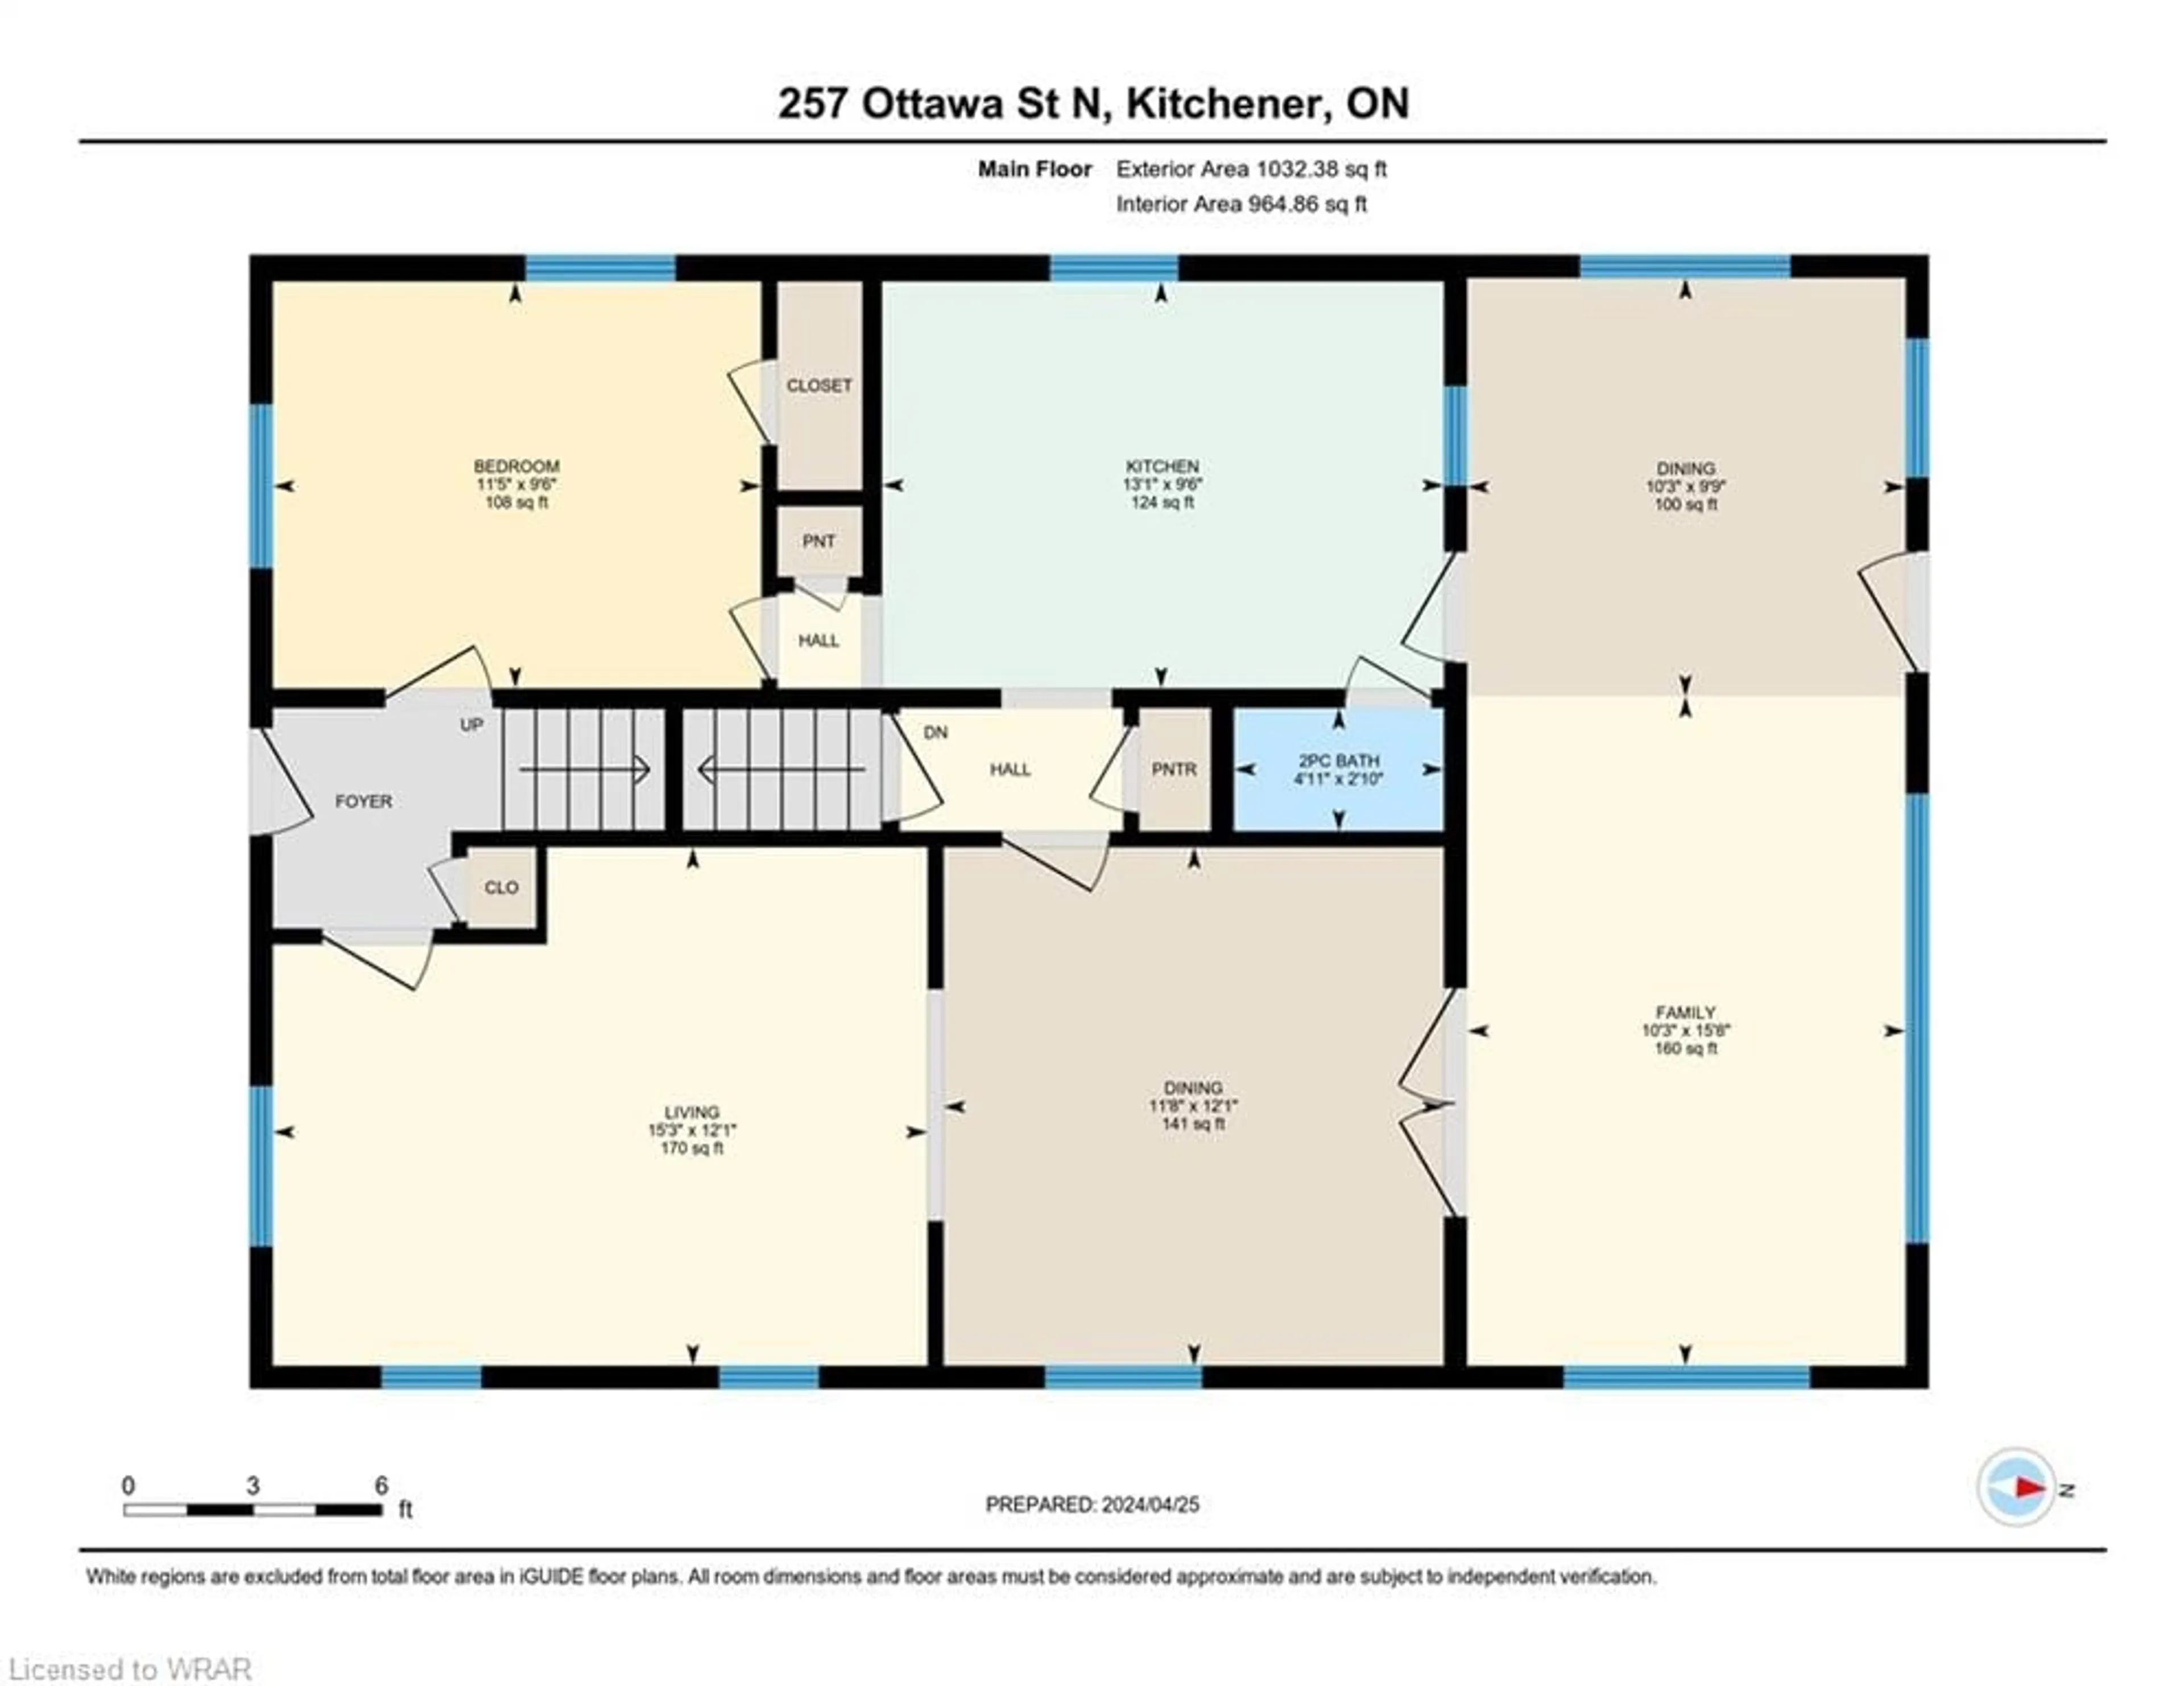 Floor plan for 257 Ottawa St, Kitchener Ontario N2H 3K9